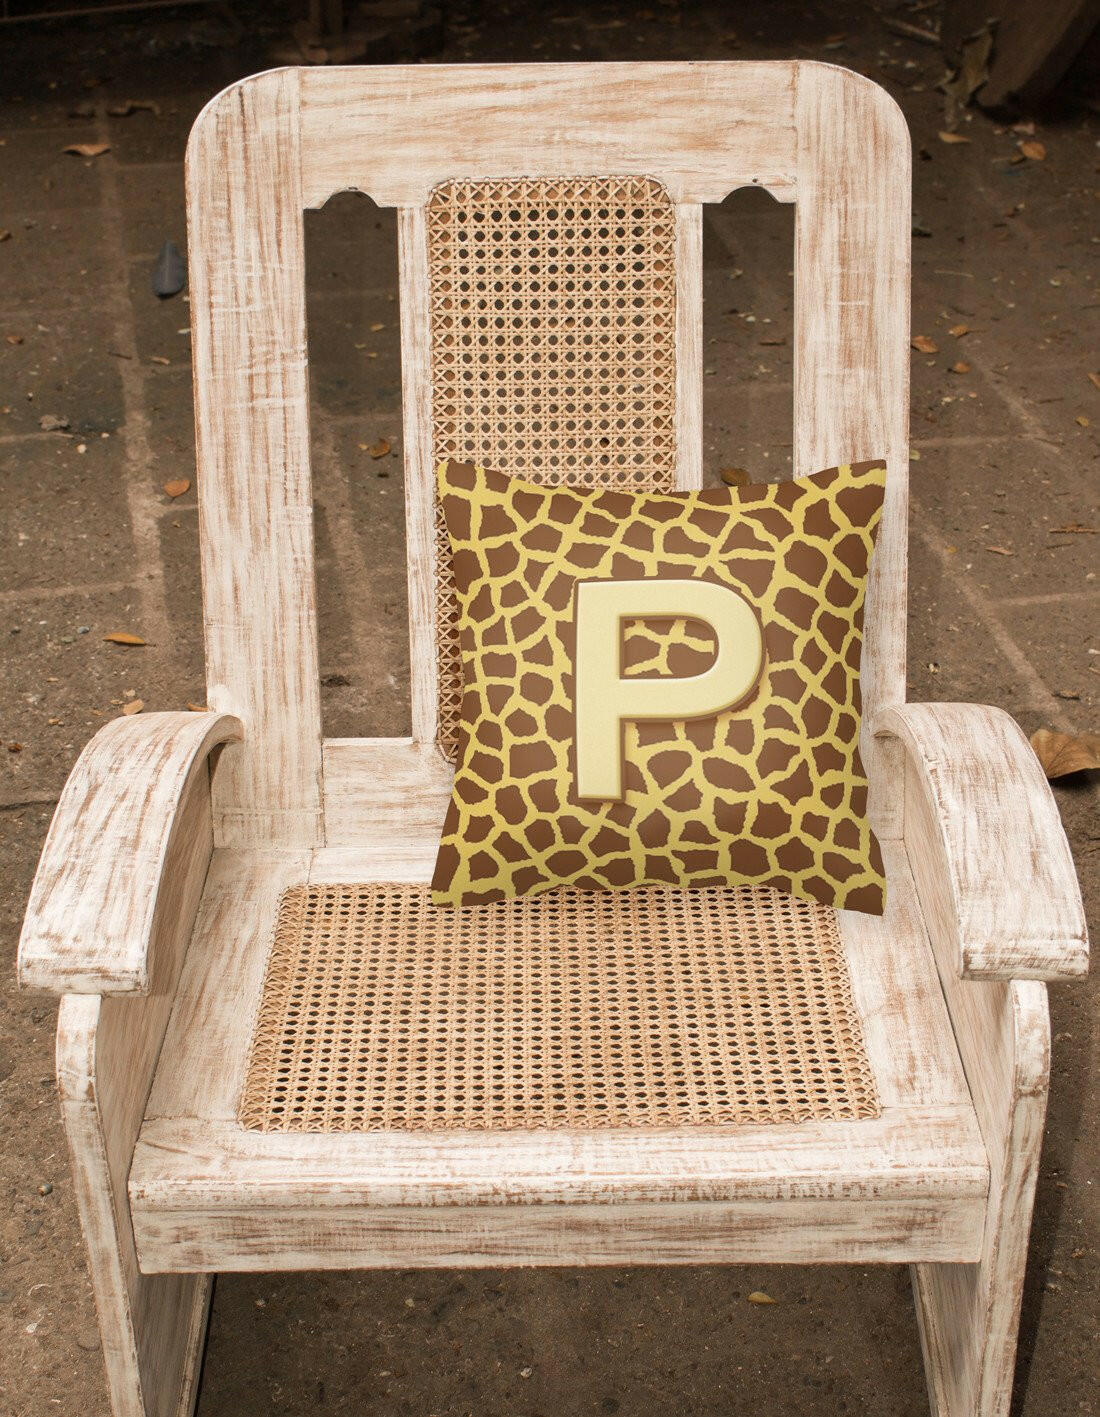 Monogram Initial P Giraffe Decorative   Canvas Fabric Pillow CJ1025 - the-store.com